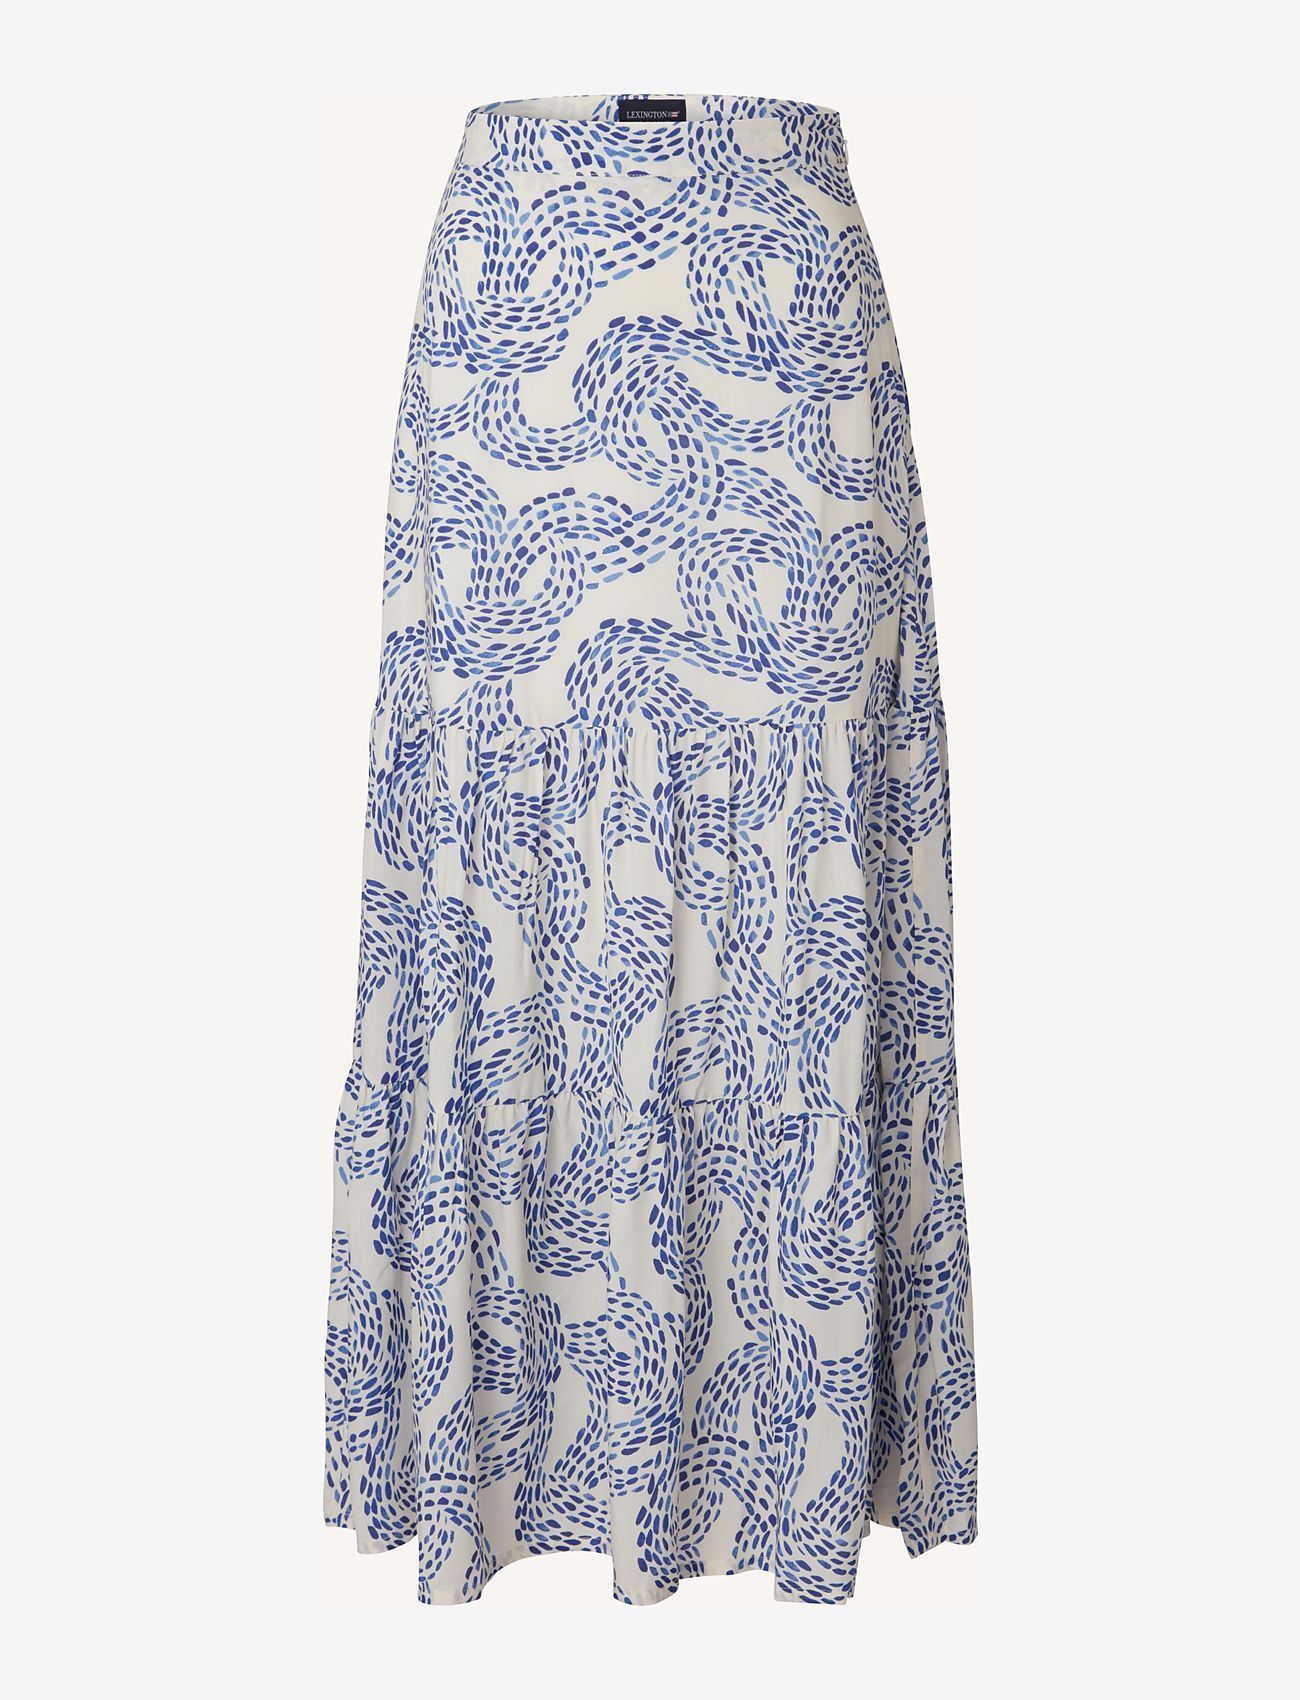 Lexington Clothing - Melissa Dot Print Maxi Skirt - ilgi sijonai - blue print - 0